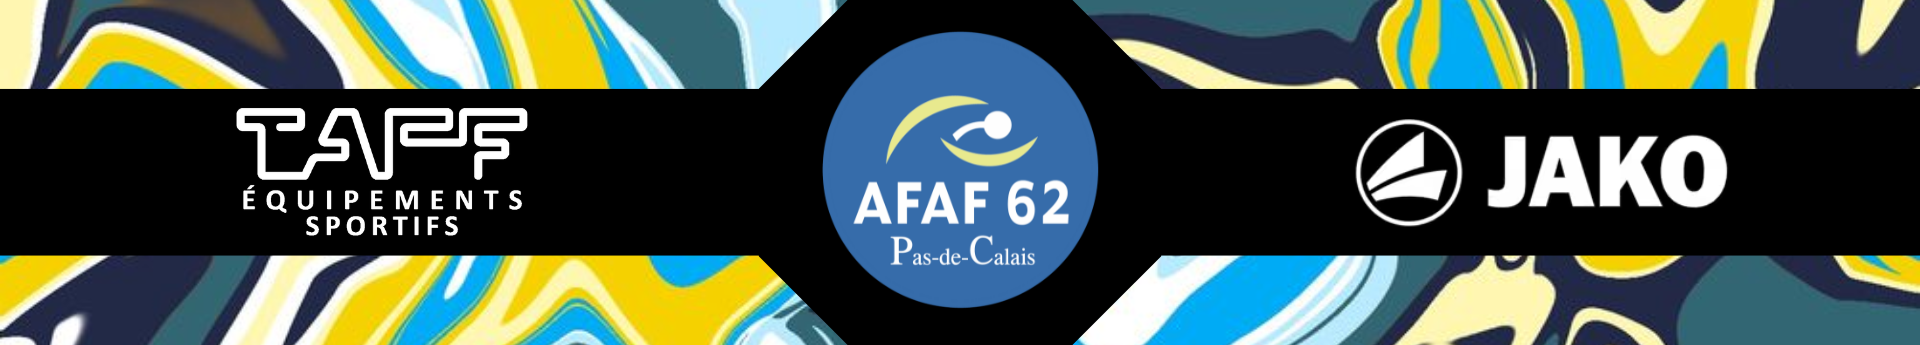 AFAF 62 Title Image